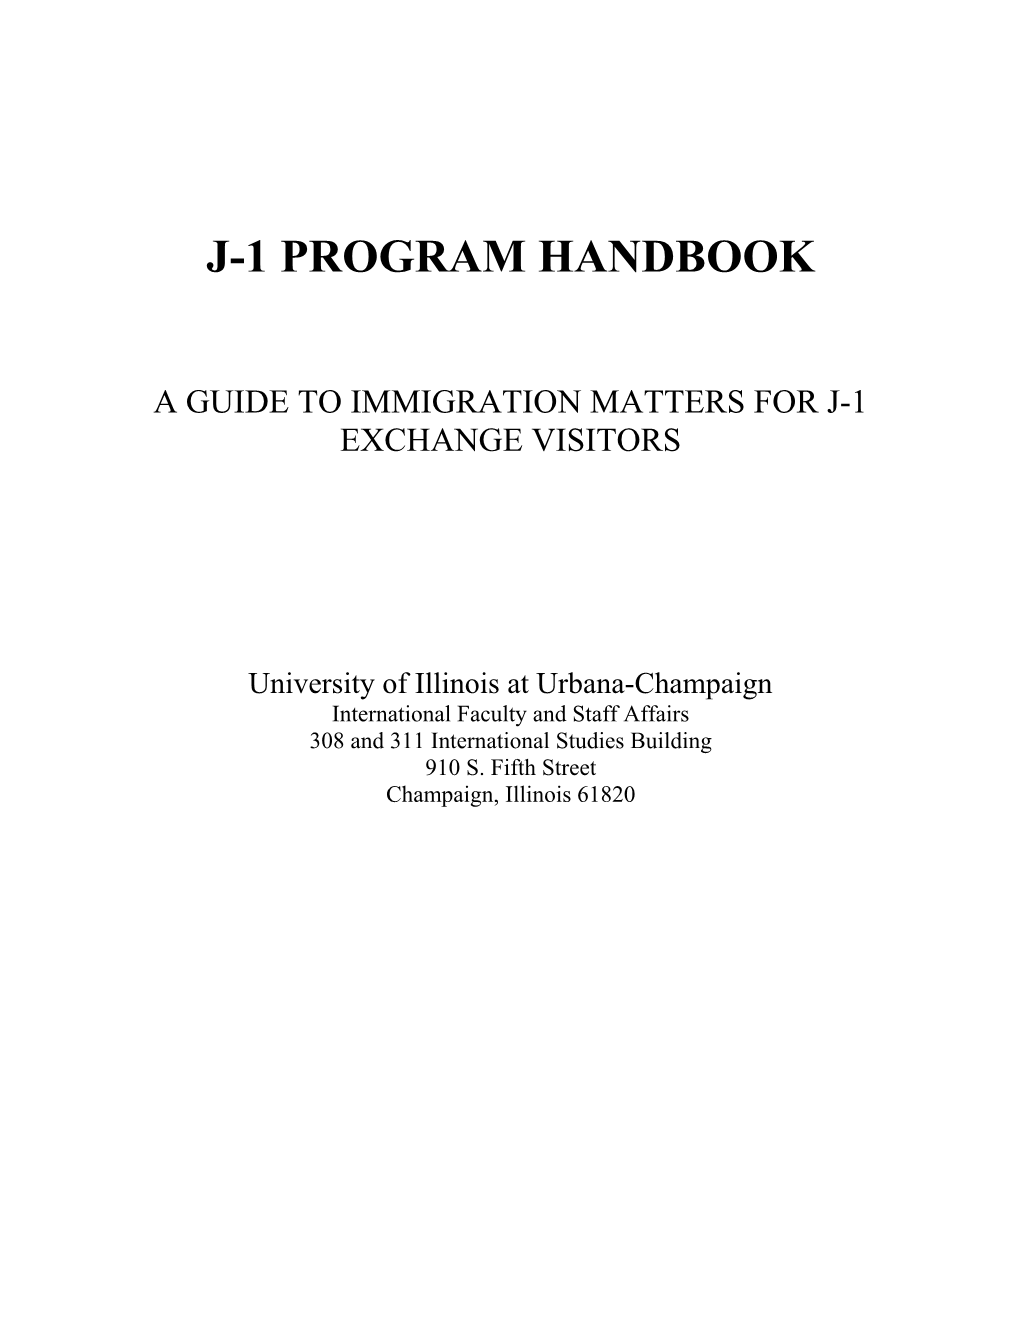 J-1 Program Handbook